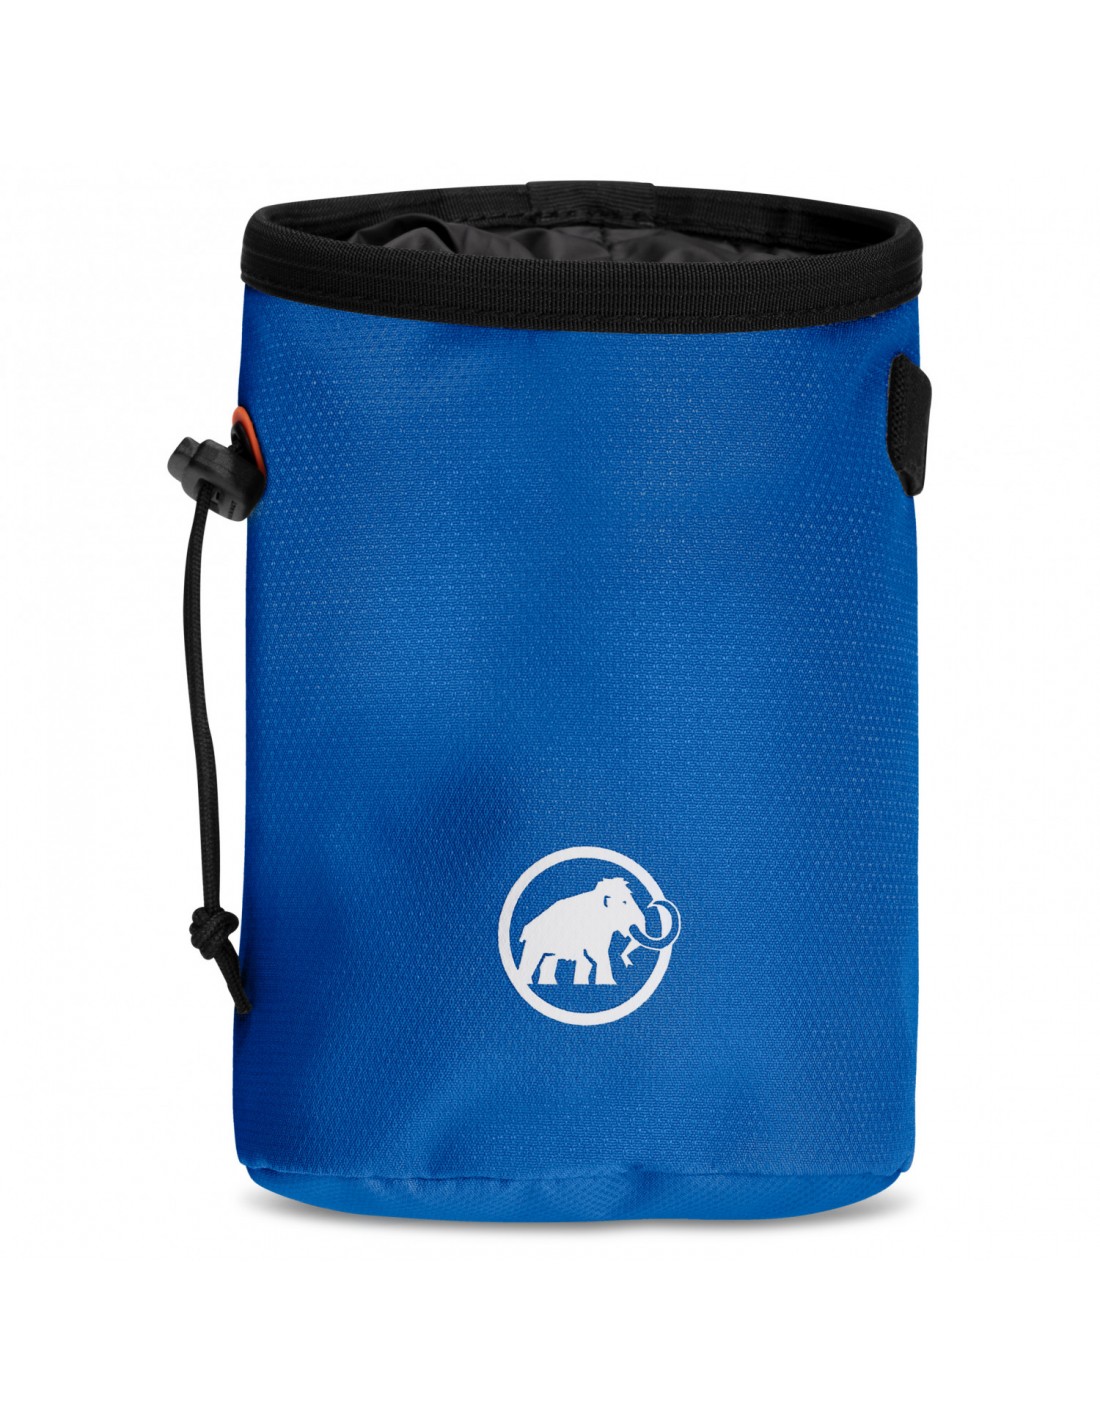 Mammut Gym Basic Chalk Bag, ice Chalkbag Verwendung - Klettern, Chalkbag Farbe - Blau, von Mammut